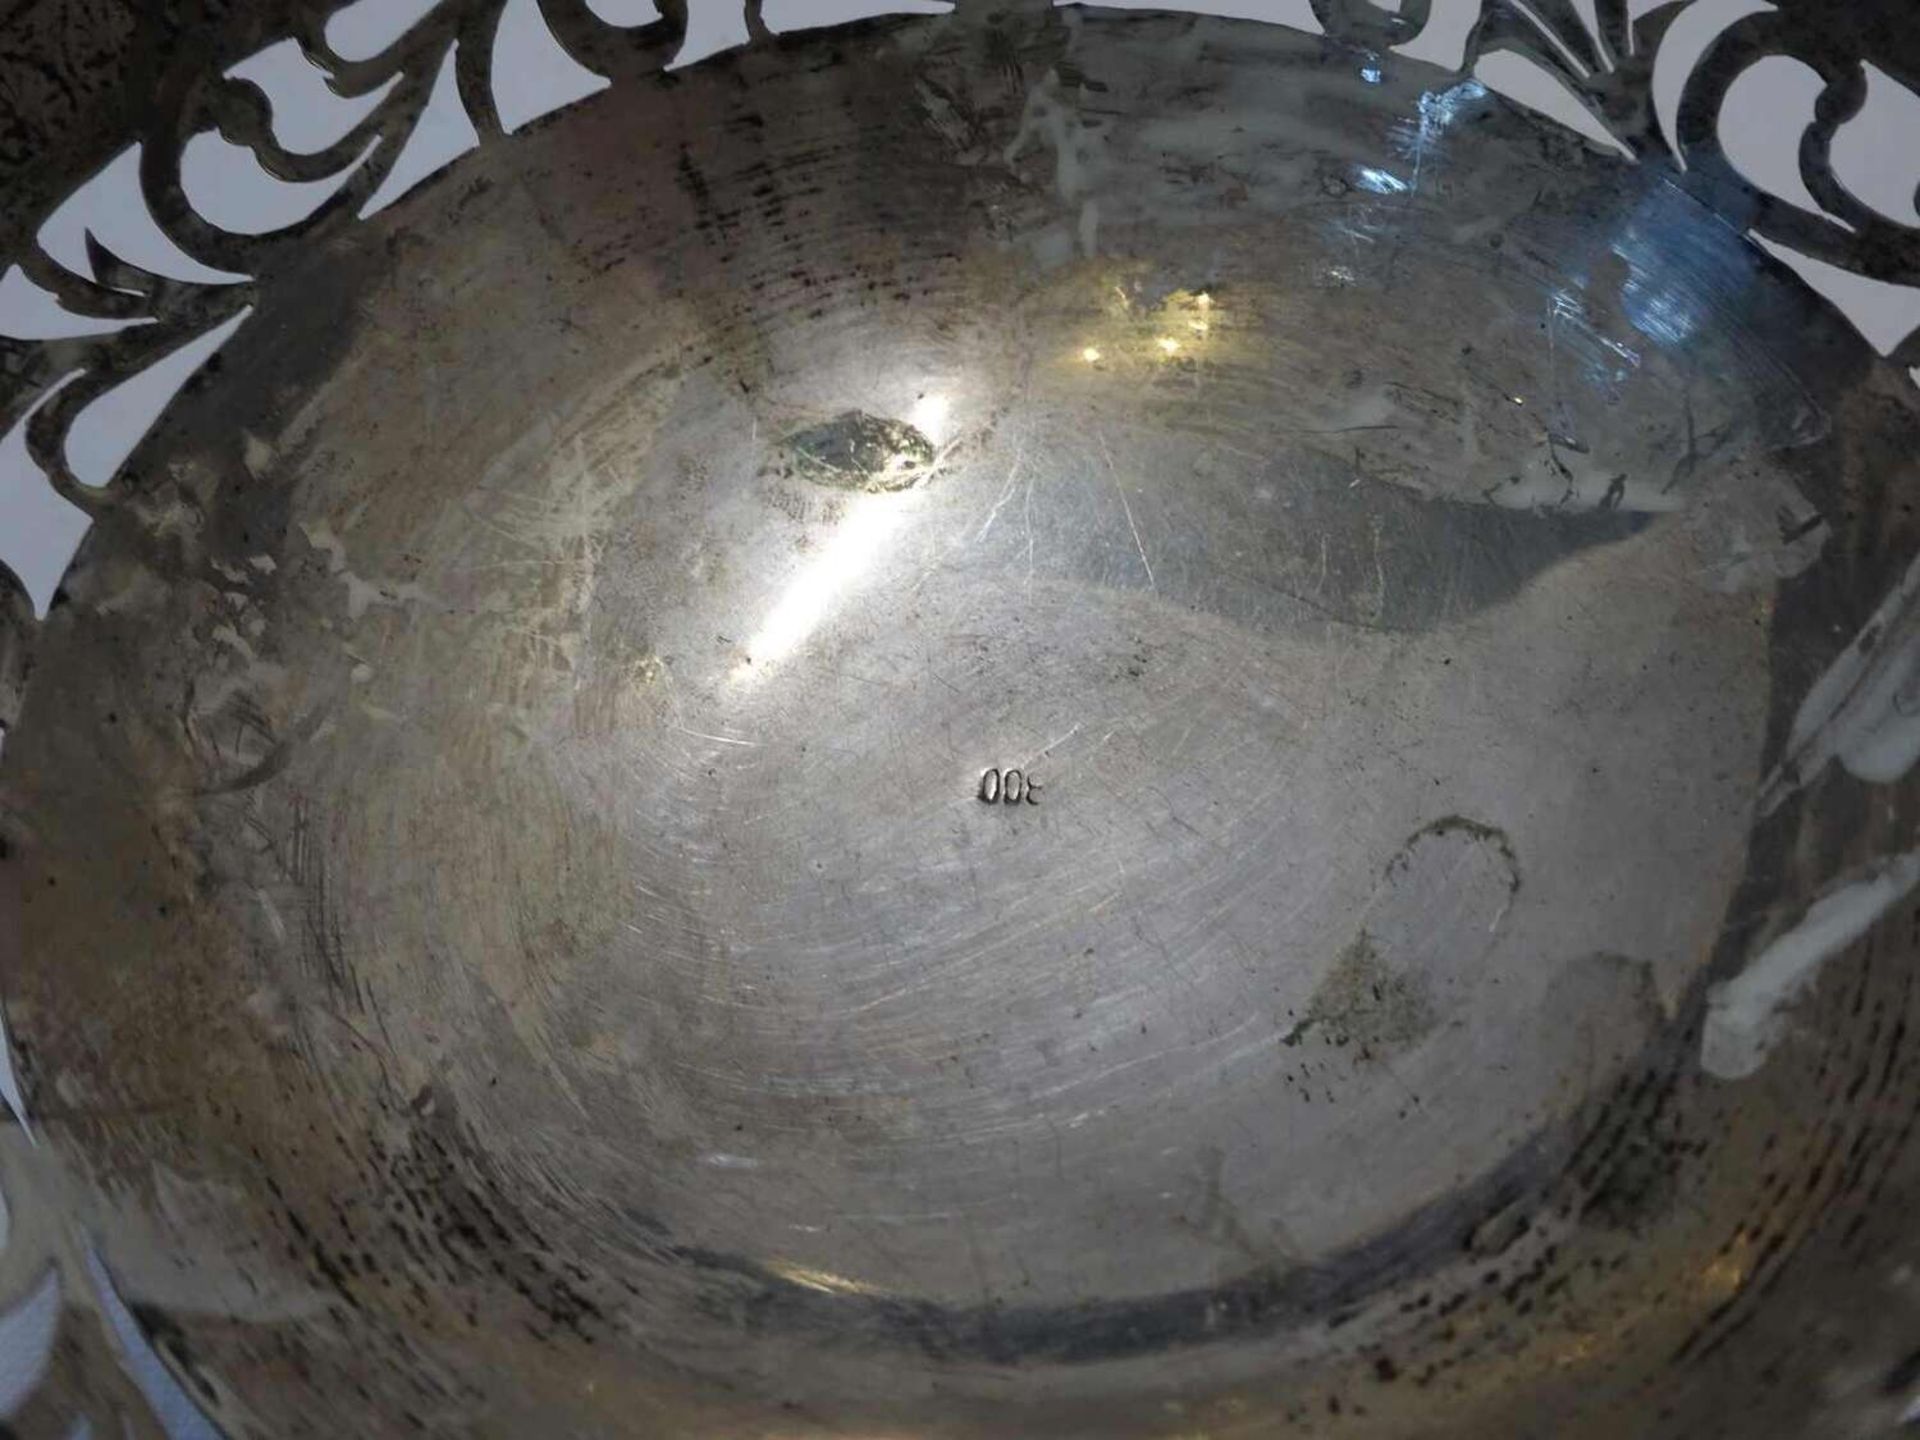 Silberschale, Seker Sigota 1955-1965. Höhe ca. 5,3 cmSilver bowl, Seker Sigota 1955-1965. Height a - Image 2 of 3